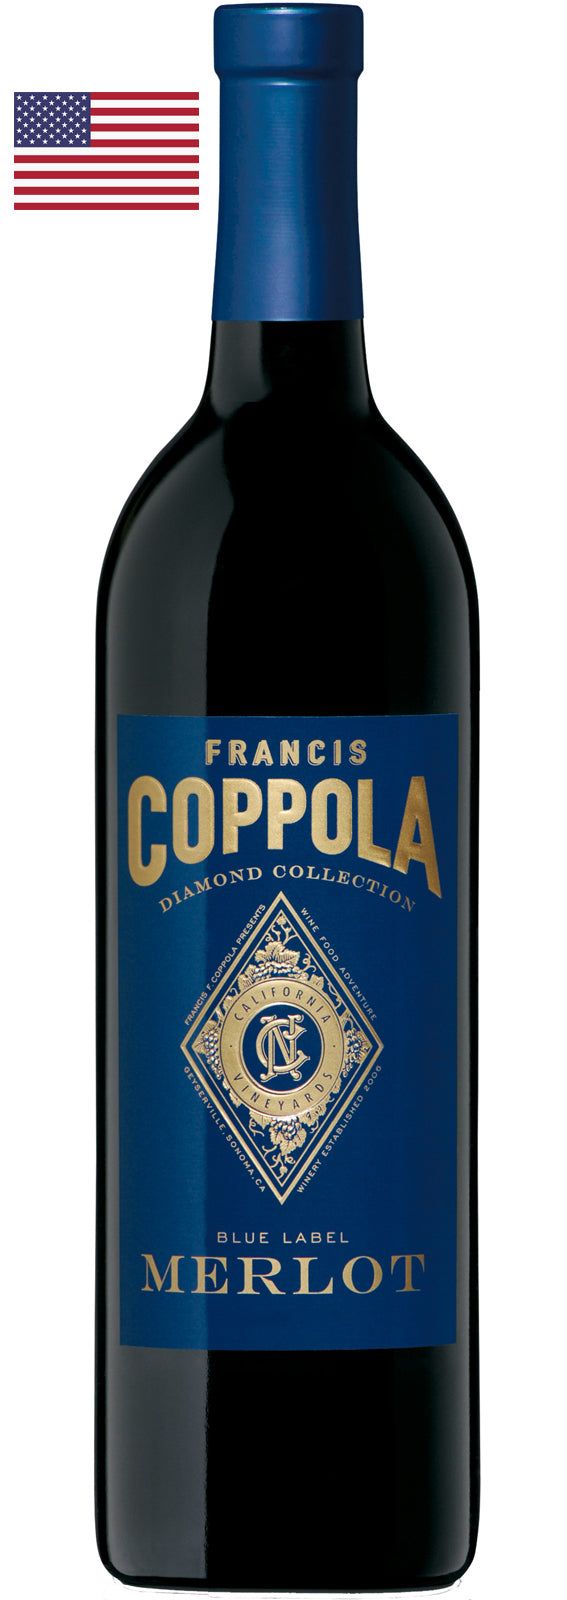 Francis Coppola Blue Label Merlot - Club del Gourmet